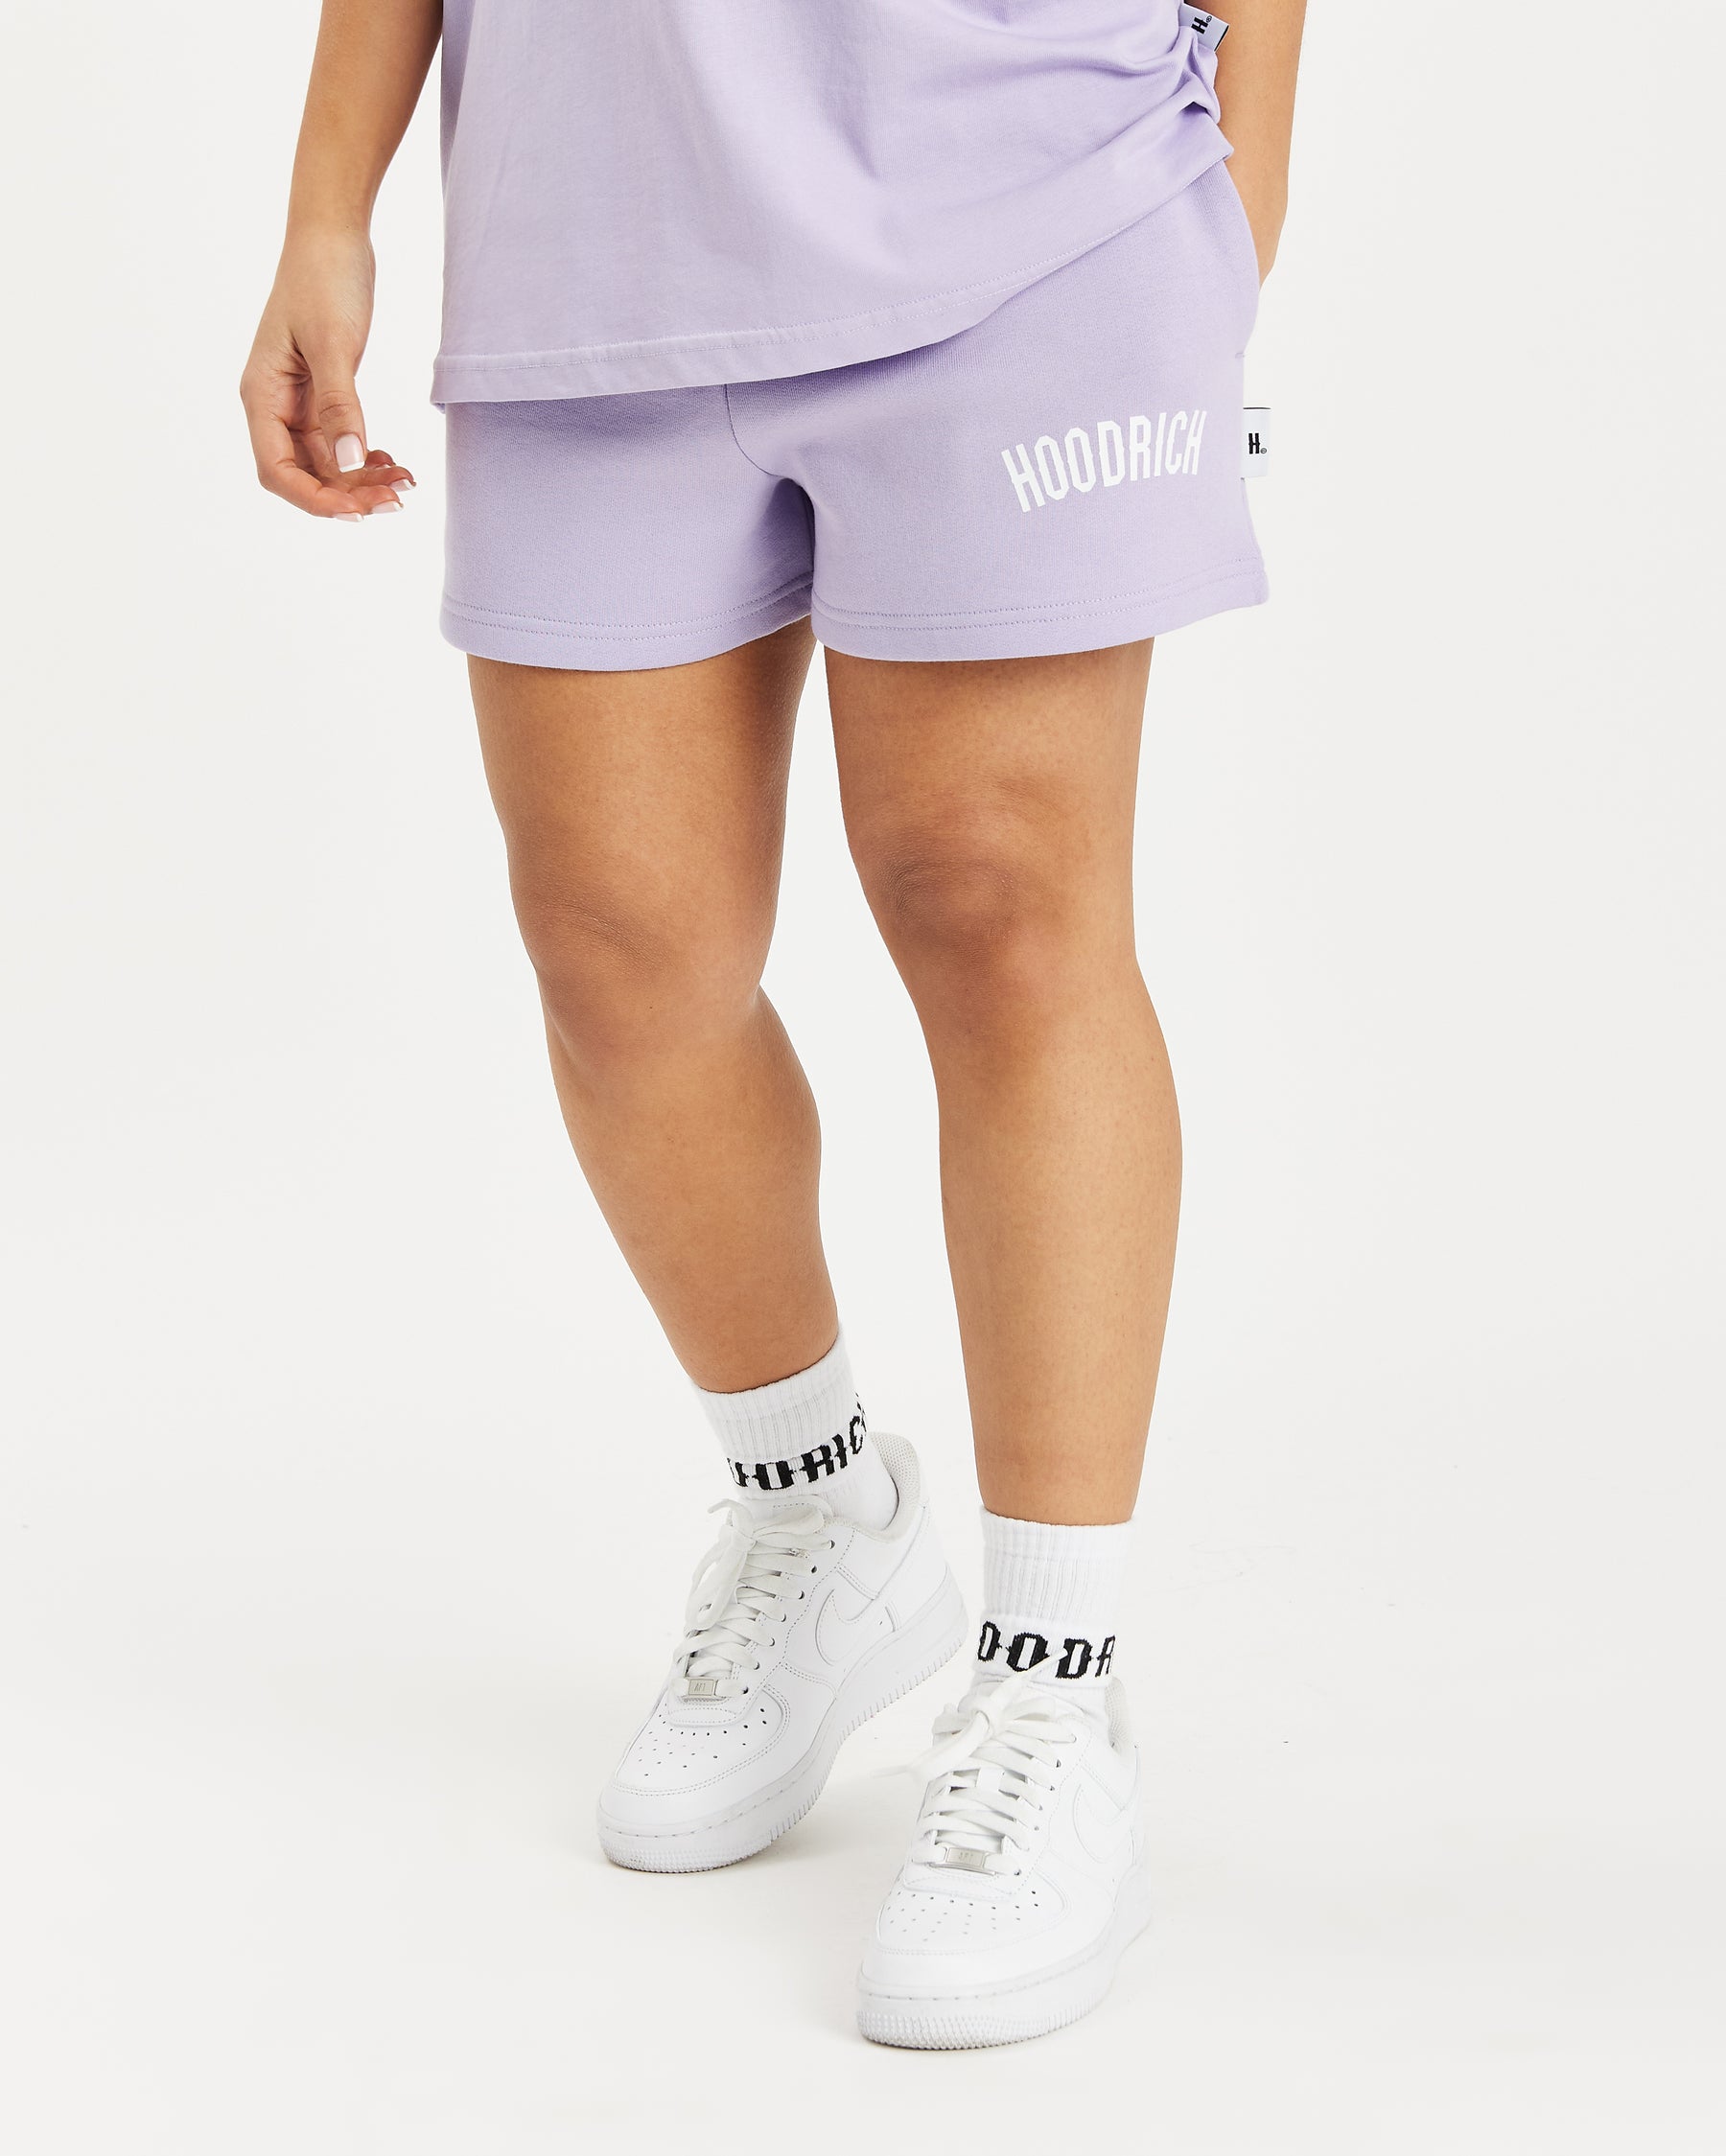 OG Staple Shorts - Lavender/White